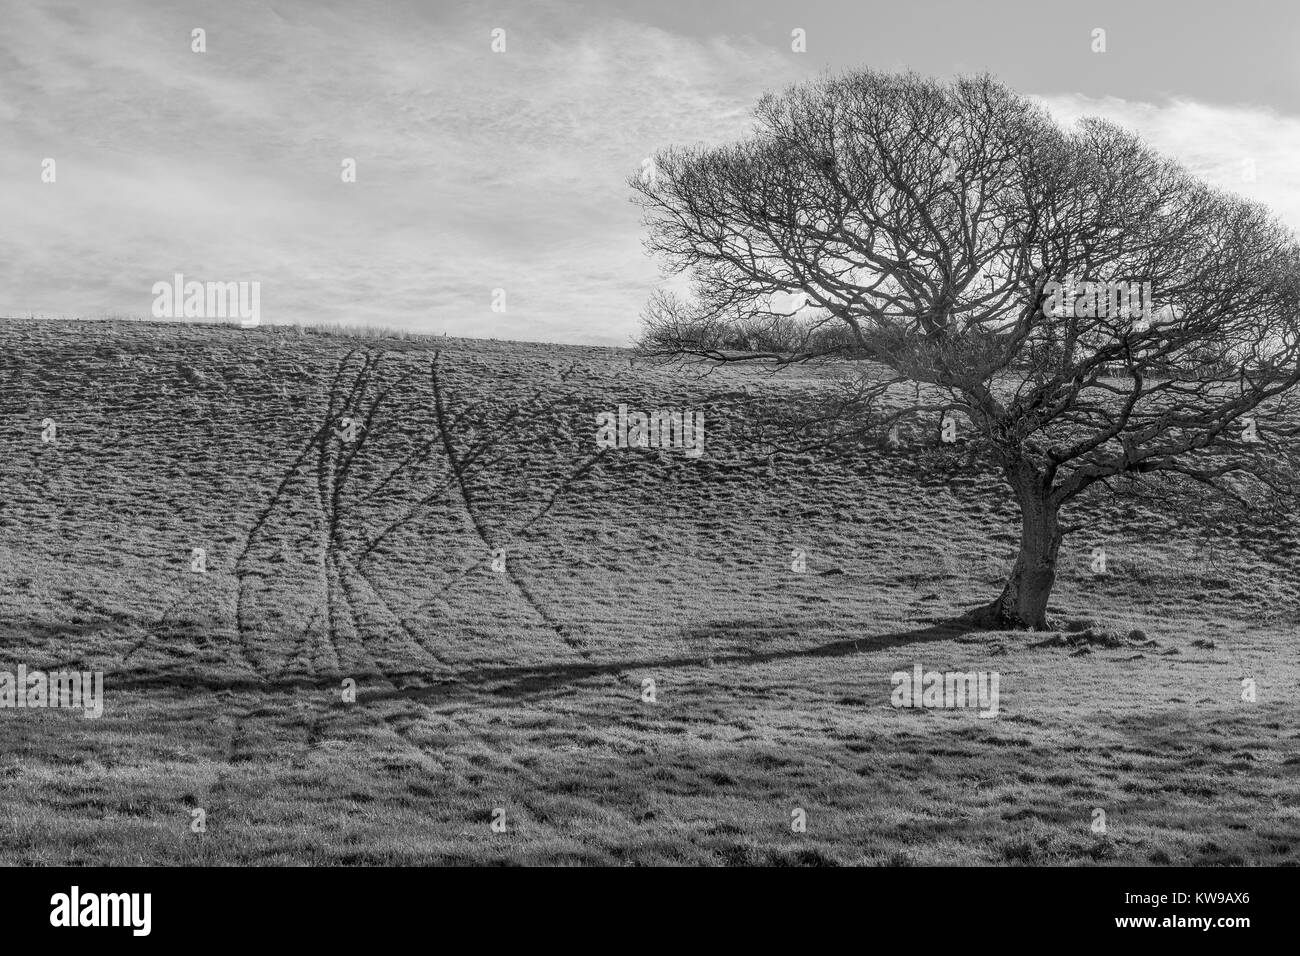 Schwarz-weiß-Bild (Umwandlung von Farbe) einer isolierten Eiche Baum in einem Feld und die Marken von Tierspuren im Gras - mit kopieren. Stockfoto